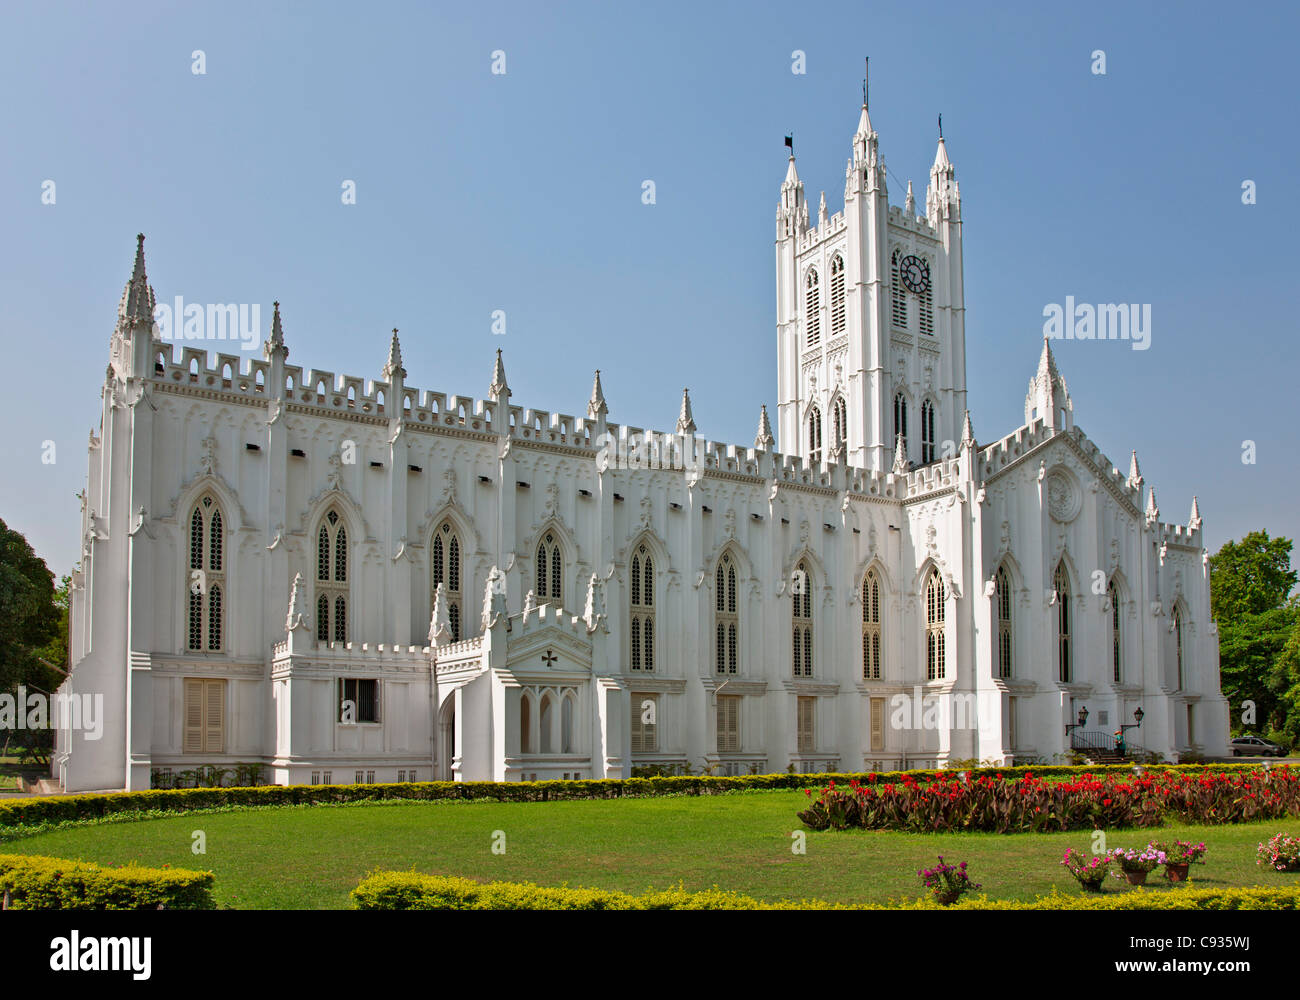 La magnifique cathédrale St Paul néo-gothique a été construite entre 1839 et 1847. Banque D'Images